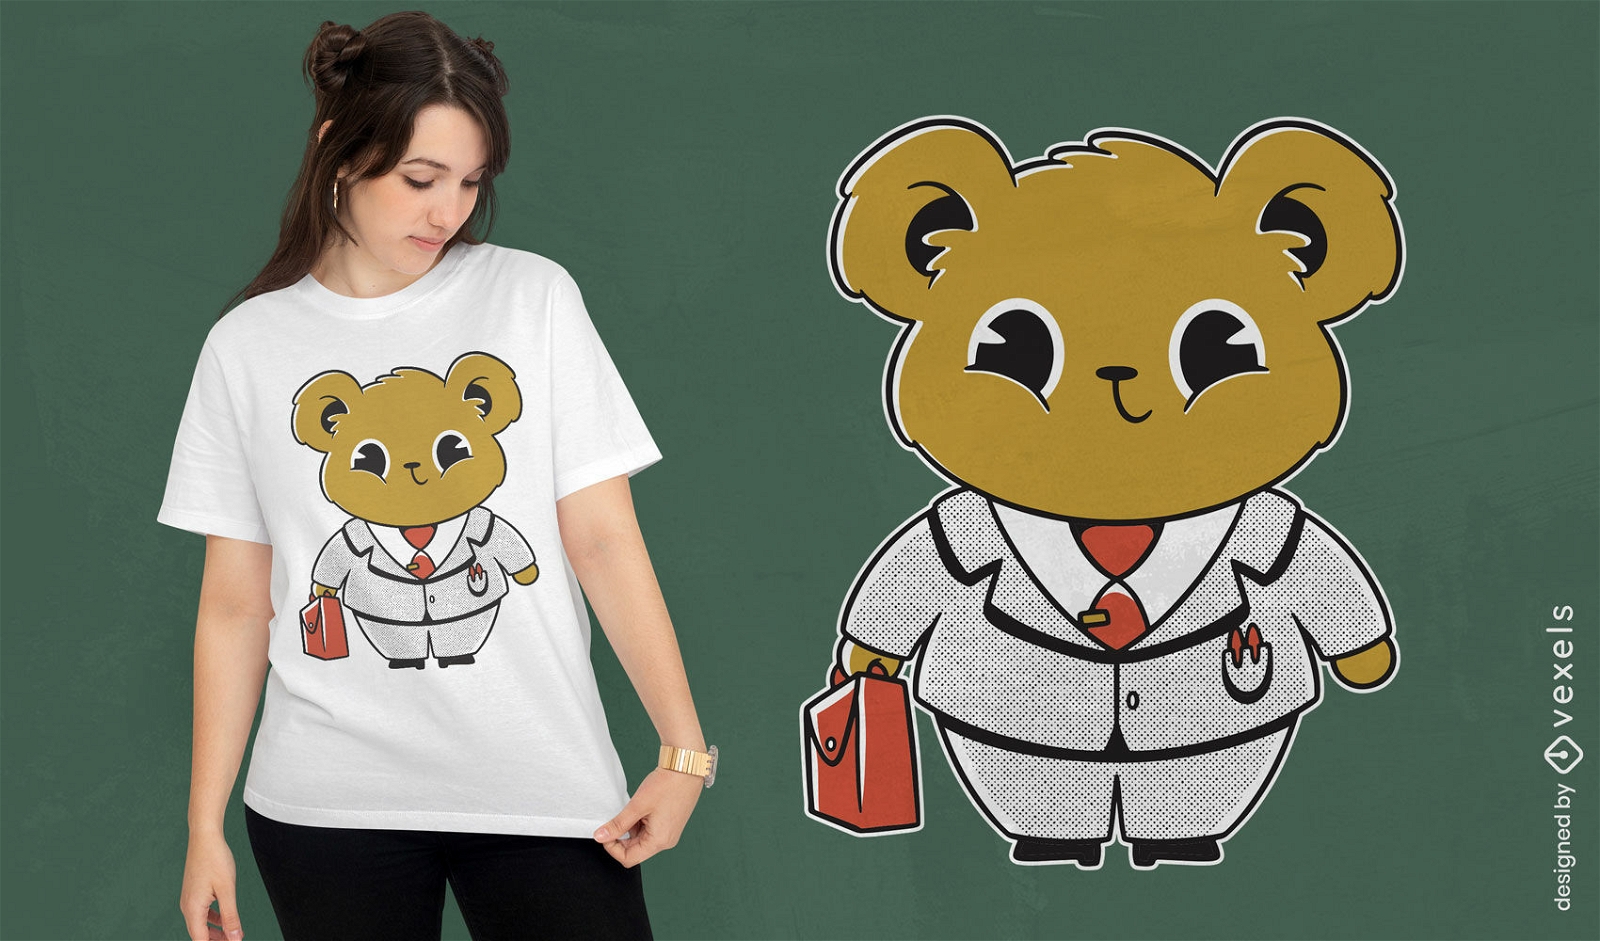 Business bear character t-shirt design